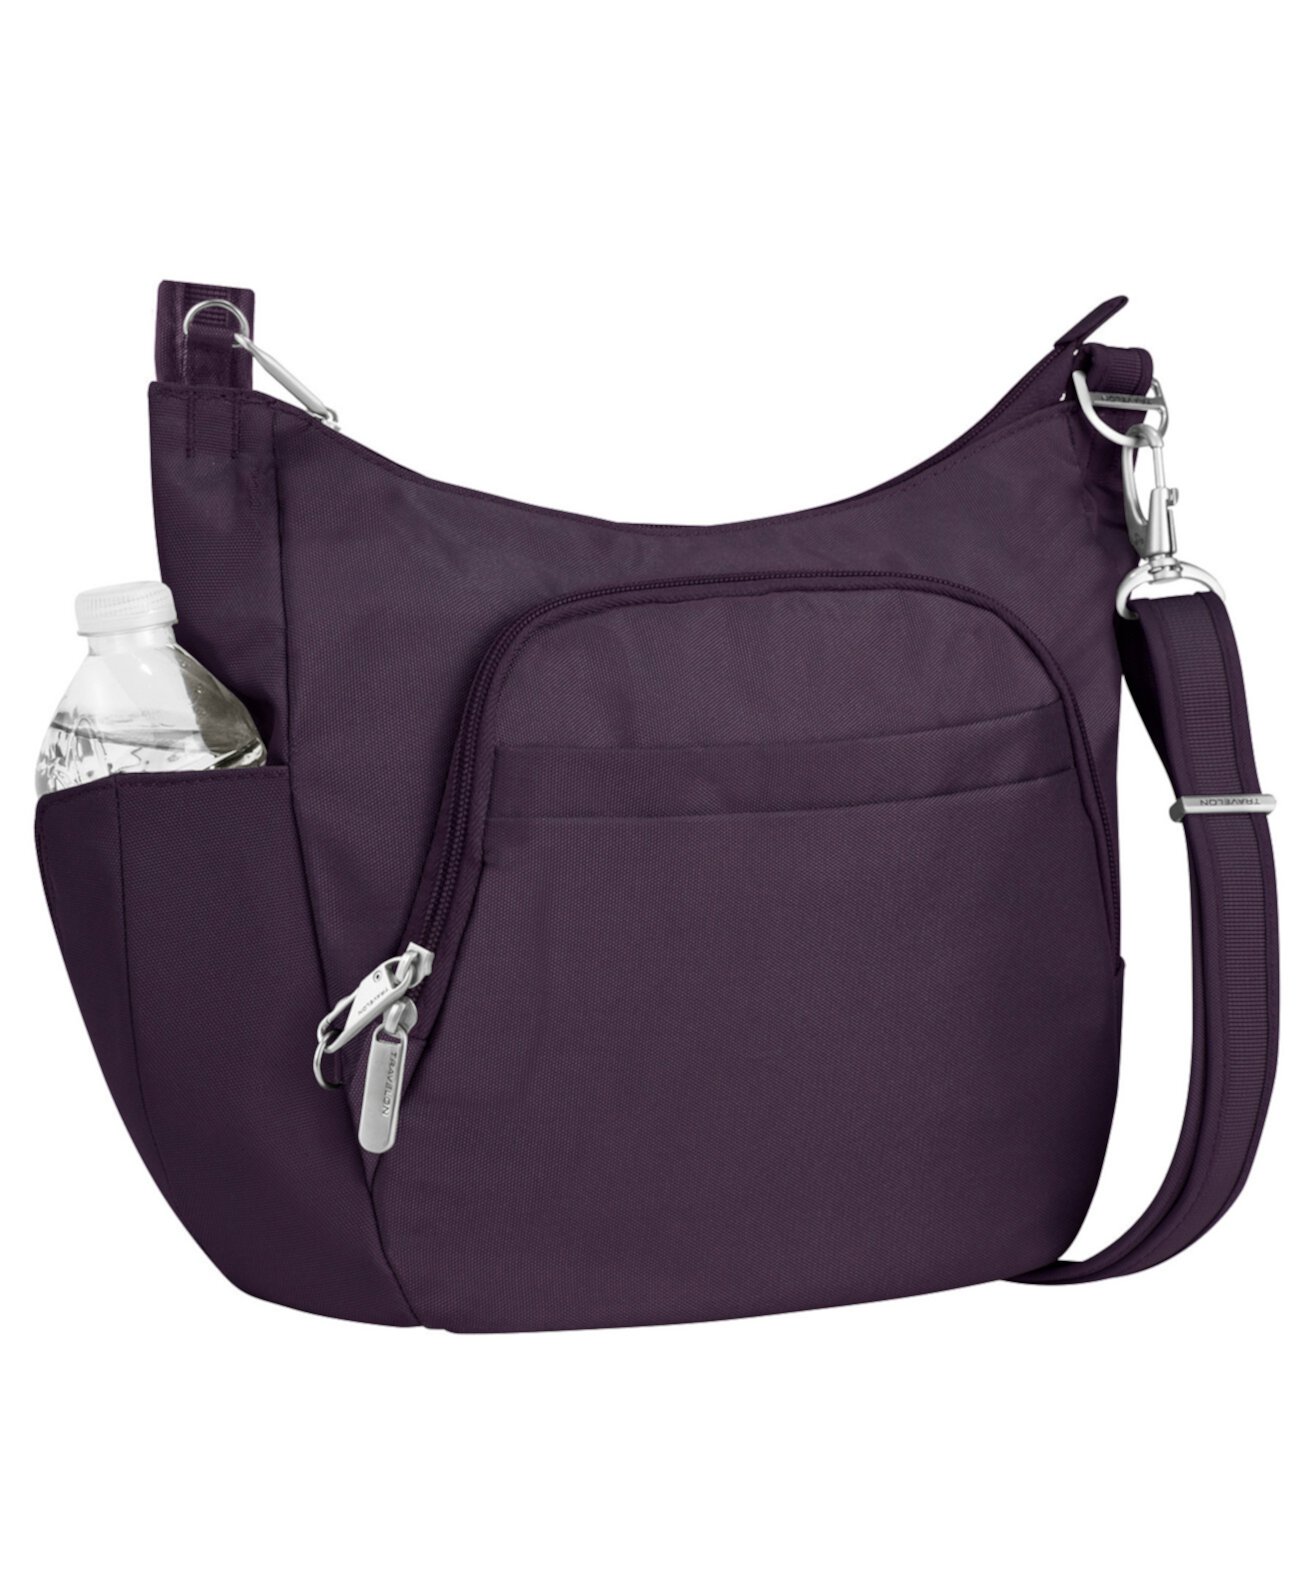 Классическая сумка-мешок через плечо с защитой от кражи Travelon